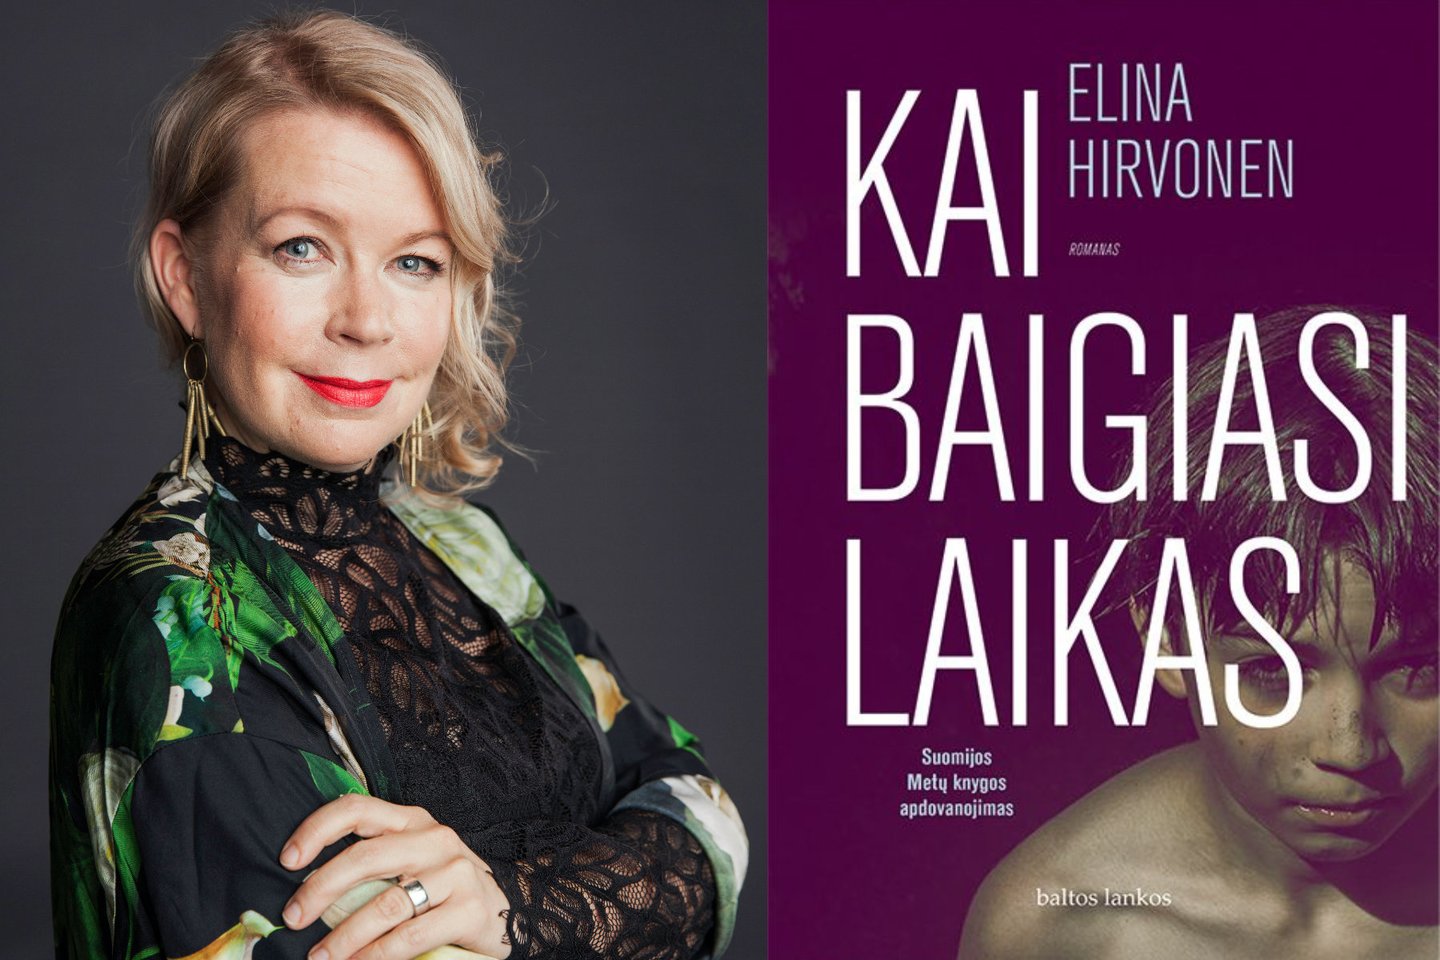  Suomių rašytoja E.Hirvonen Vilniaus knygų mugėje pristatys romaną „Kai baigiasi laikas“<br>J.Virtaneno nuotr.